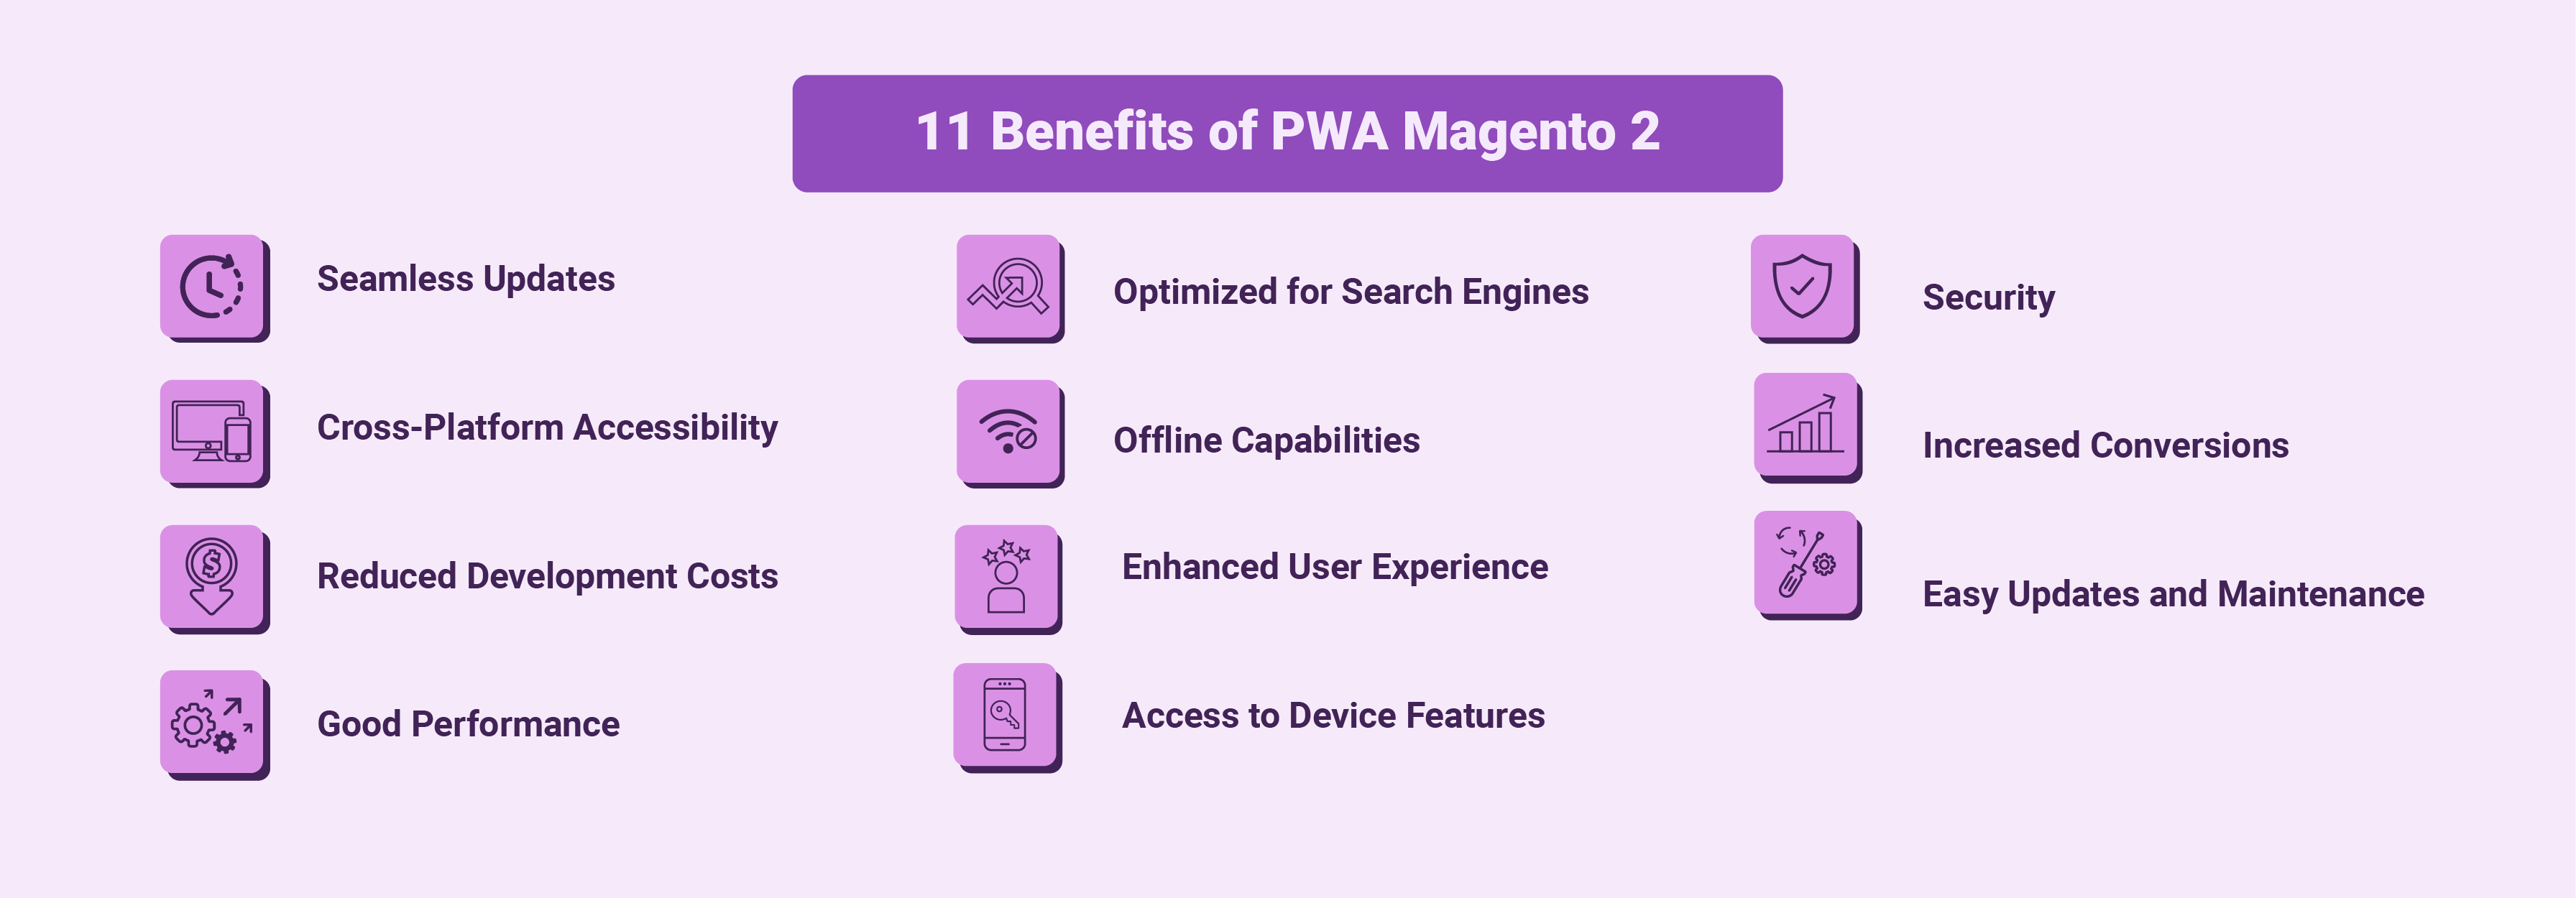 PWA Magento 2 Benefits